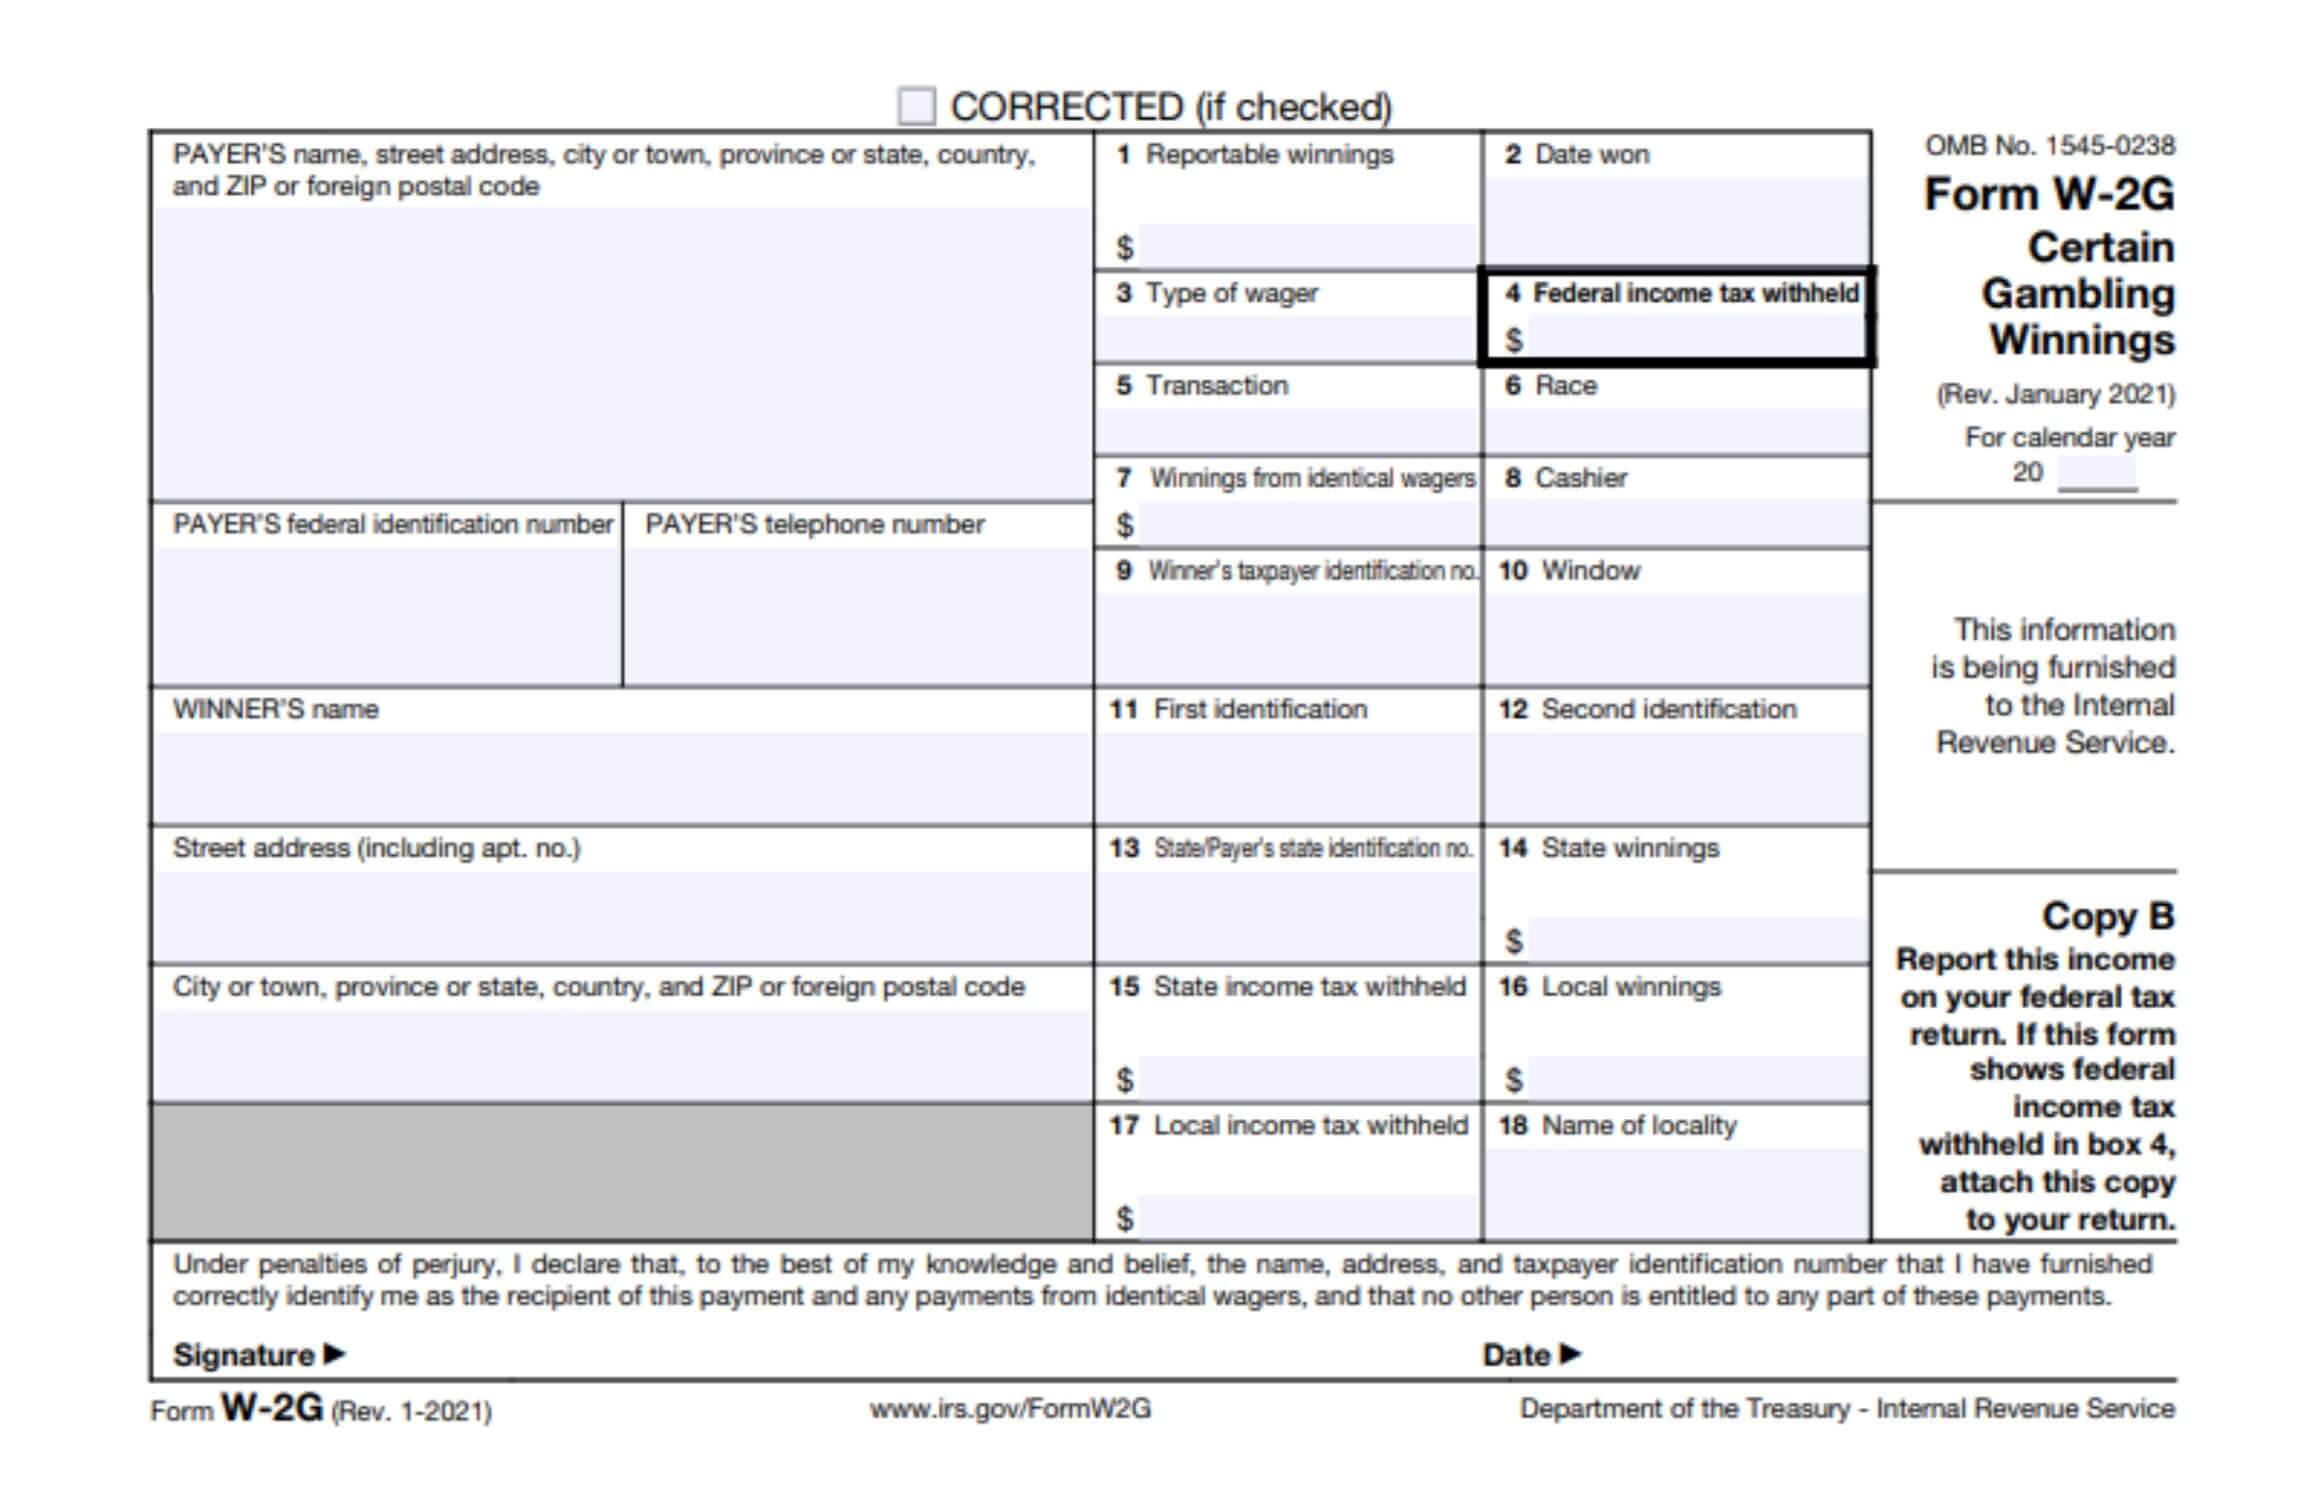 imagen de ejemplo del formulario w-2g del irs